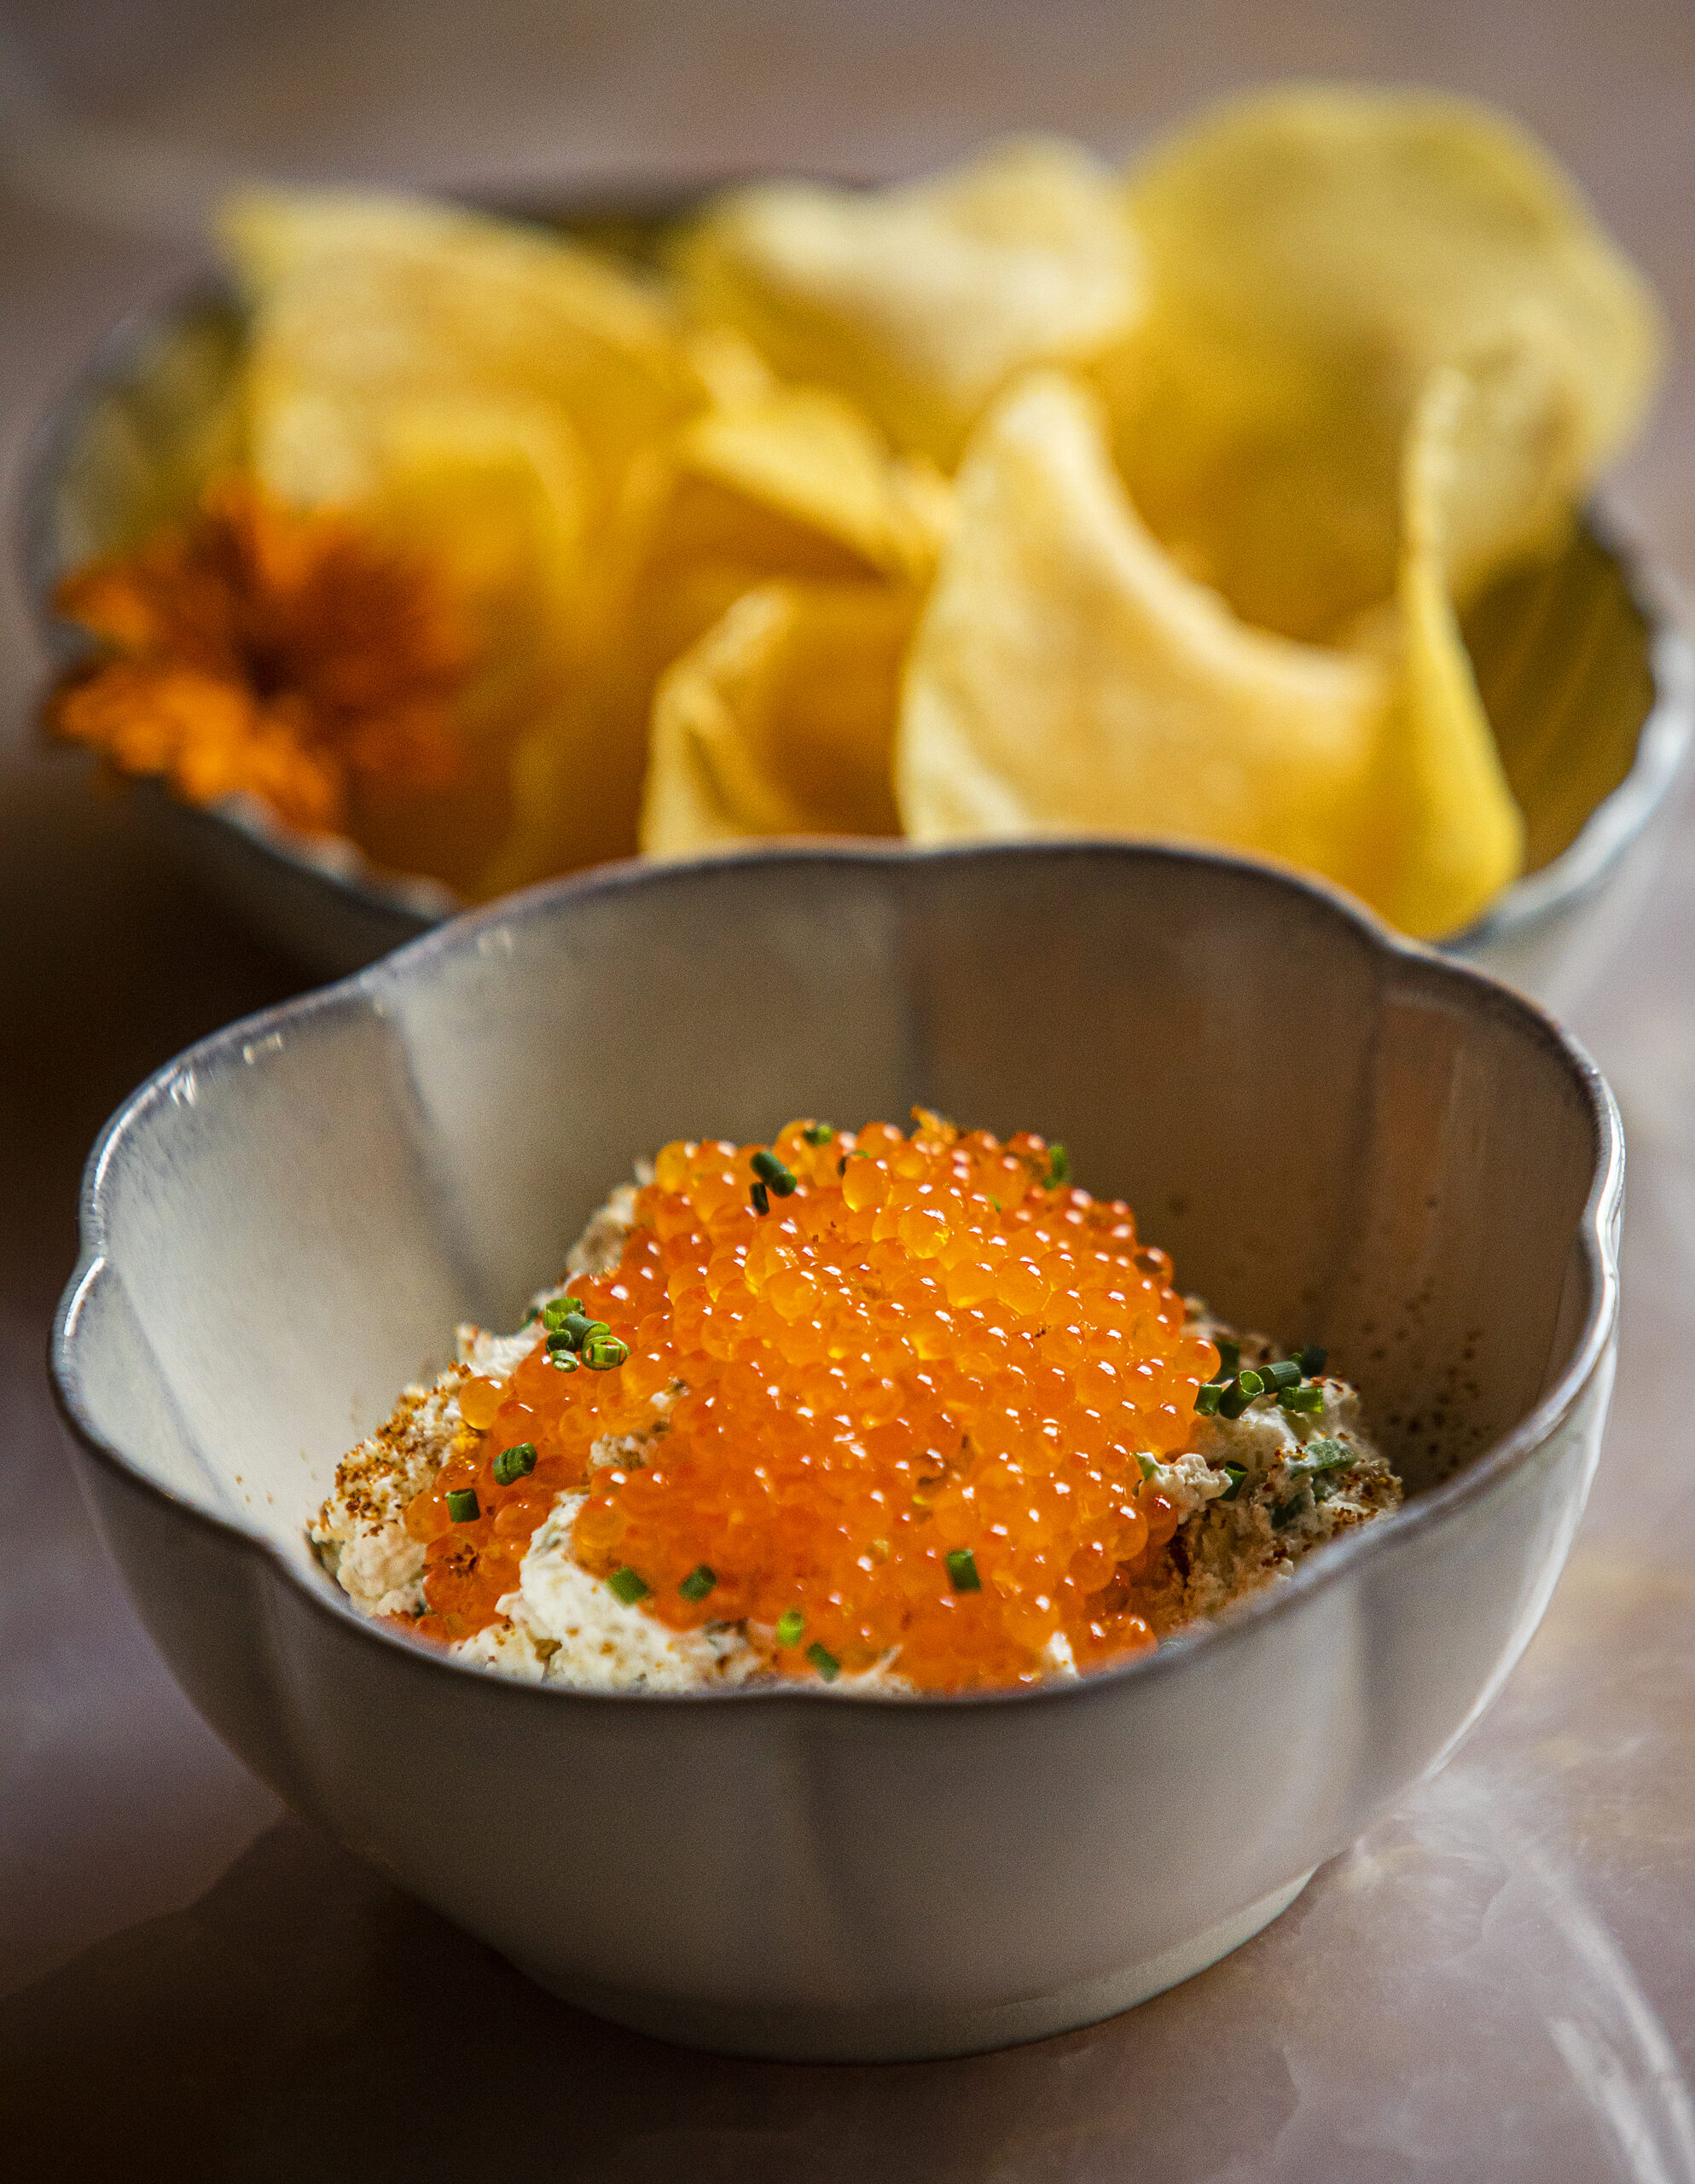 Caviar And Onion Dip with trout roe, warm potato Chips from The Madrona in Healdsurg Friday, June 3, 2022. (John Burgess / The Press Democrat)